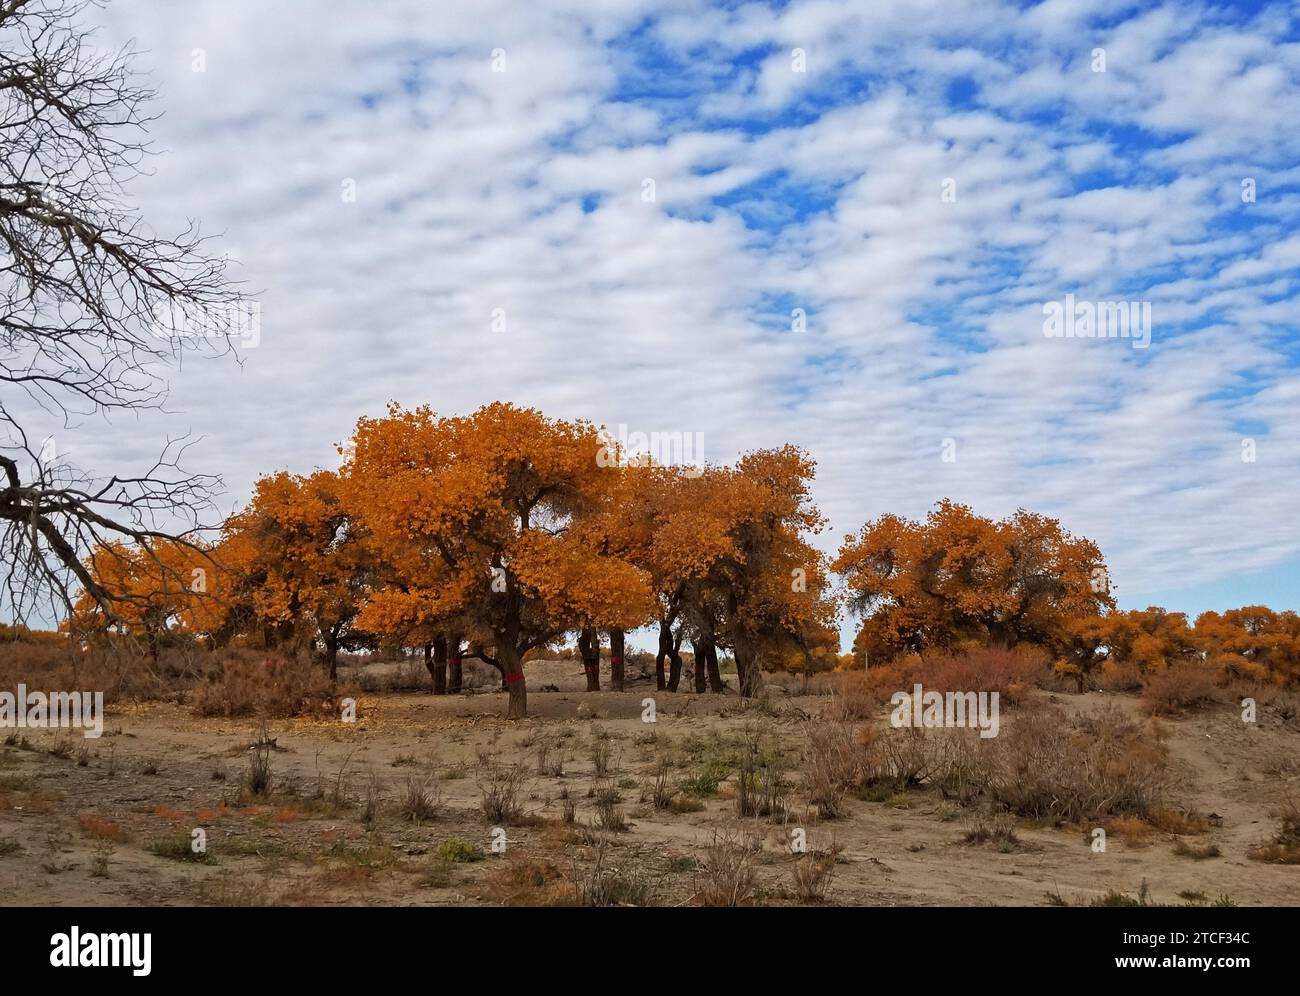 Populus euphratica o pioppi del deserto, e i loro brillanti colori autunnali, offrono molte vedute panoramiche in un'oasi desertica della Mongolia interna Foto Stock